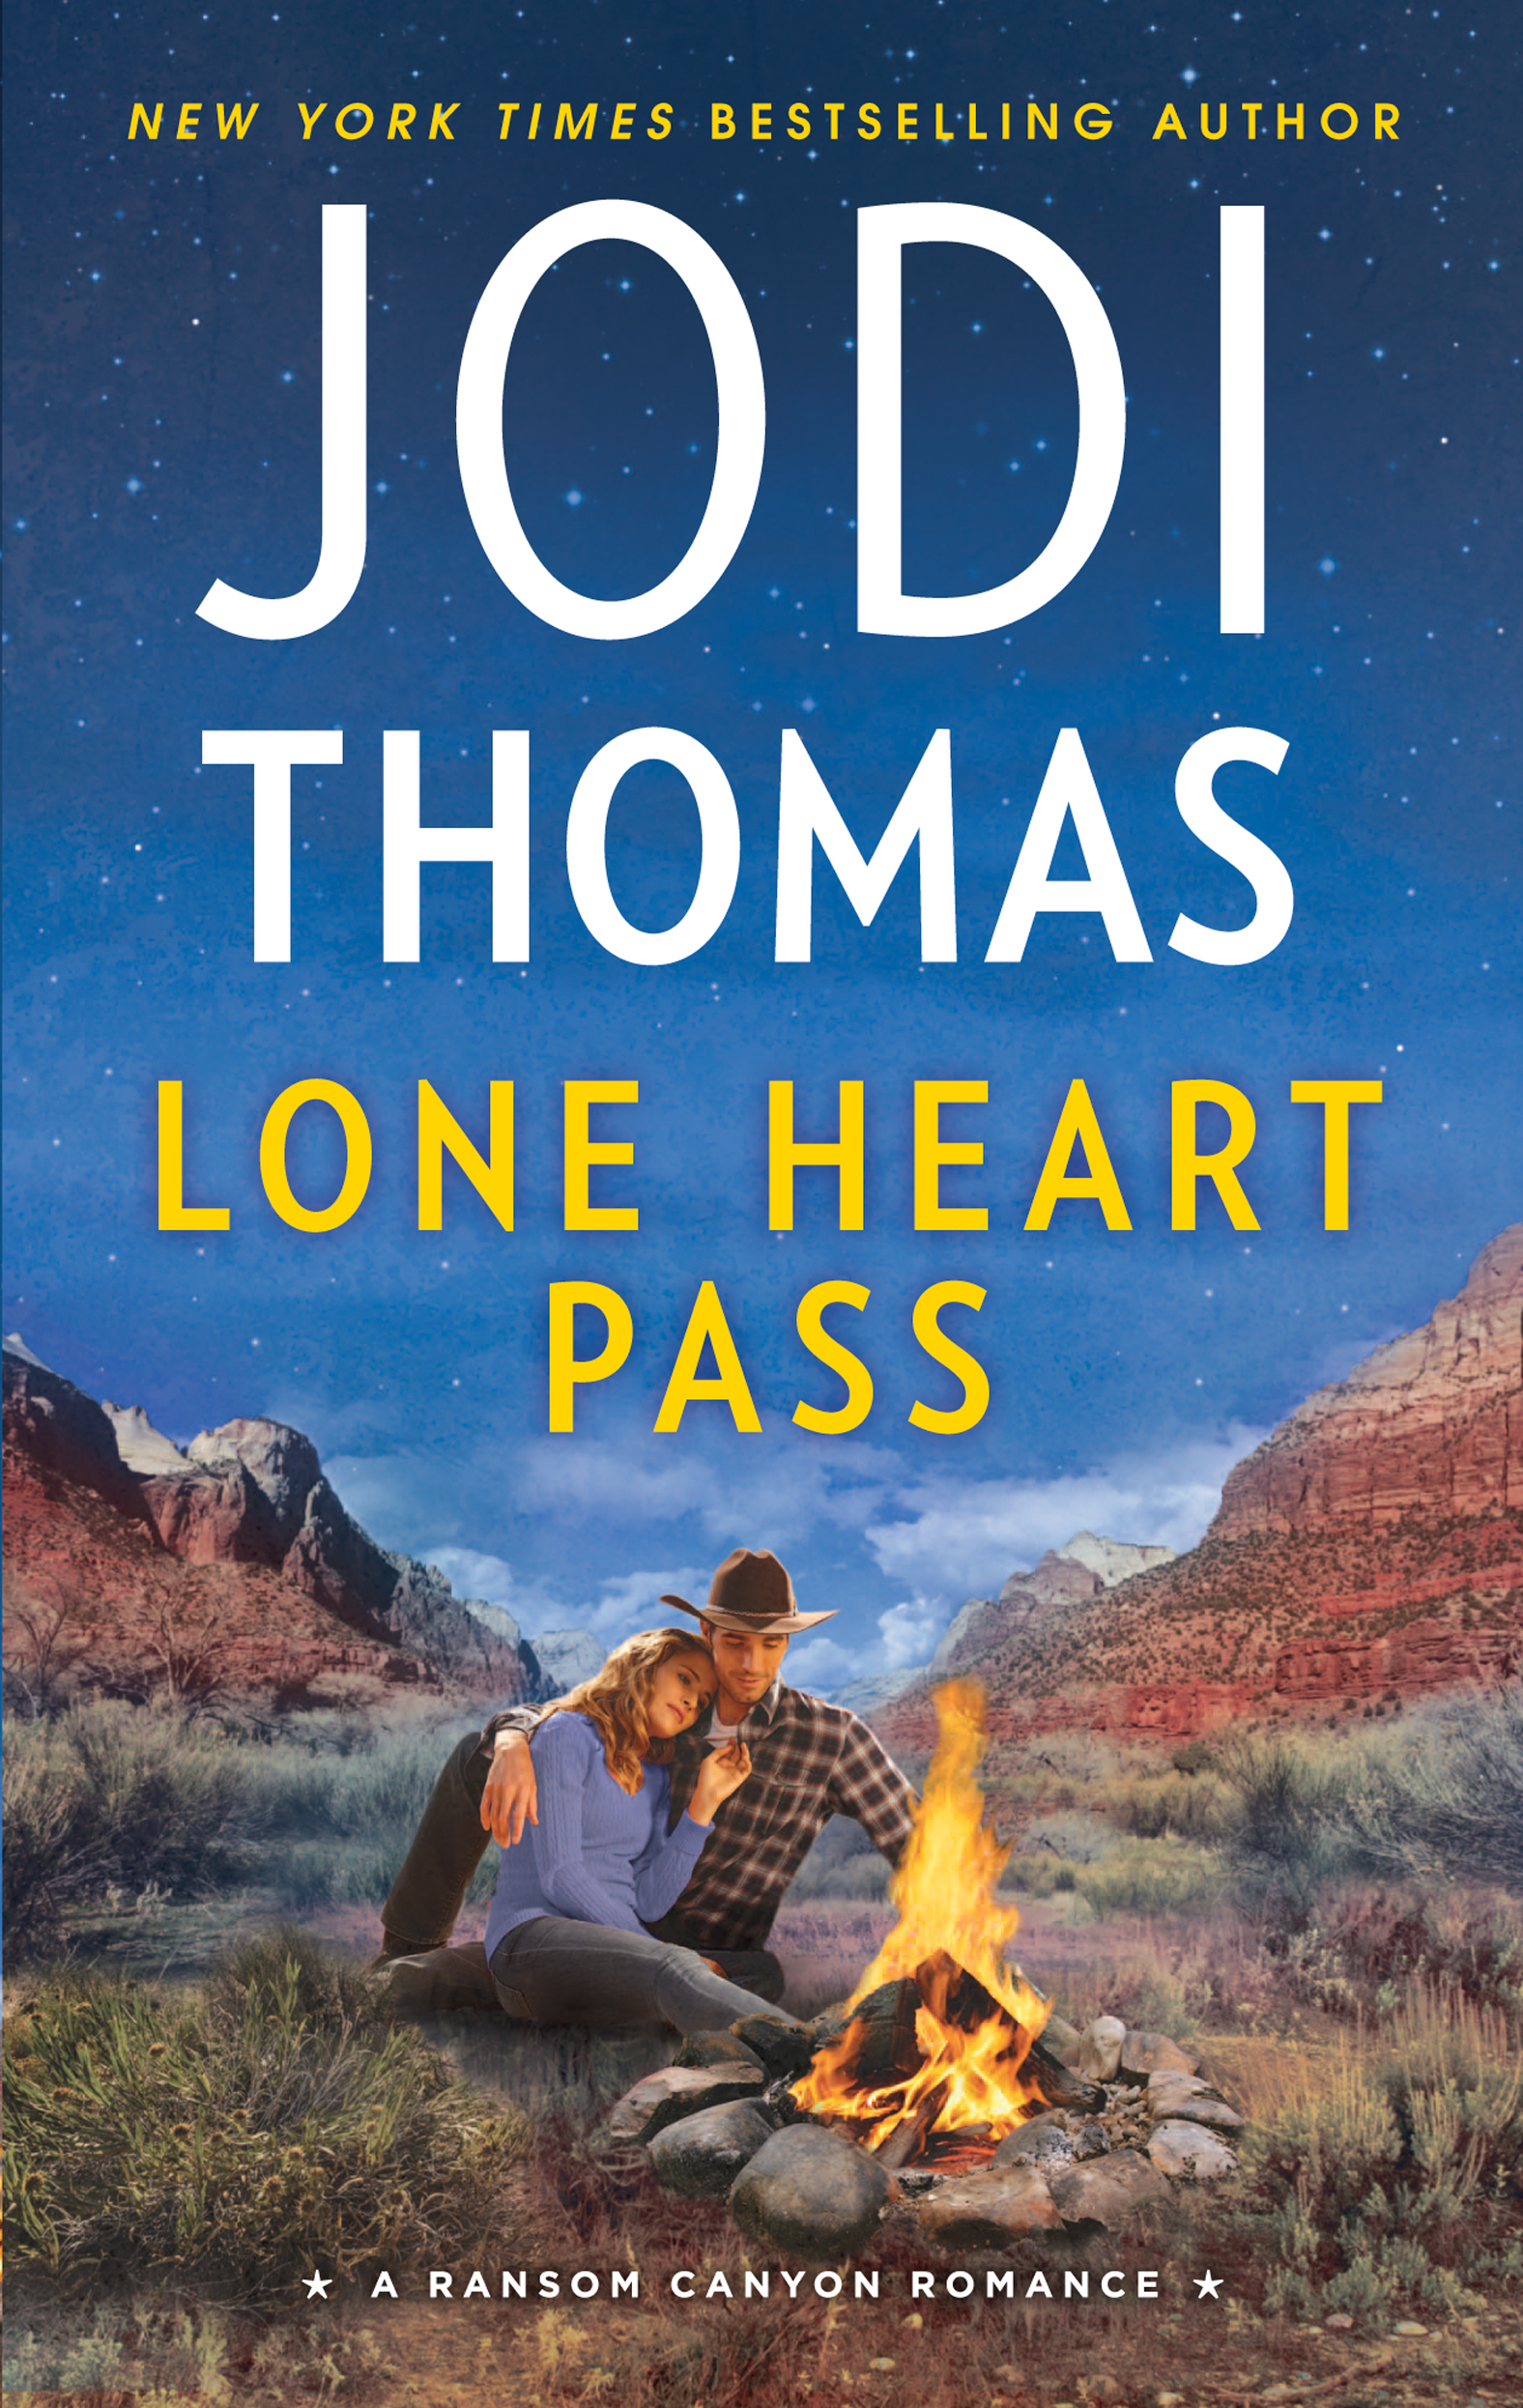 Lone Heart Pass (2016) by Jodi Thomas